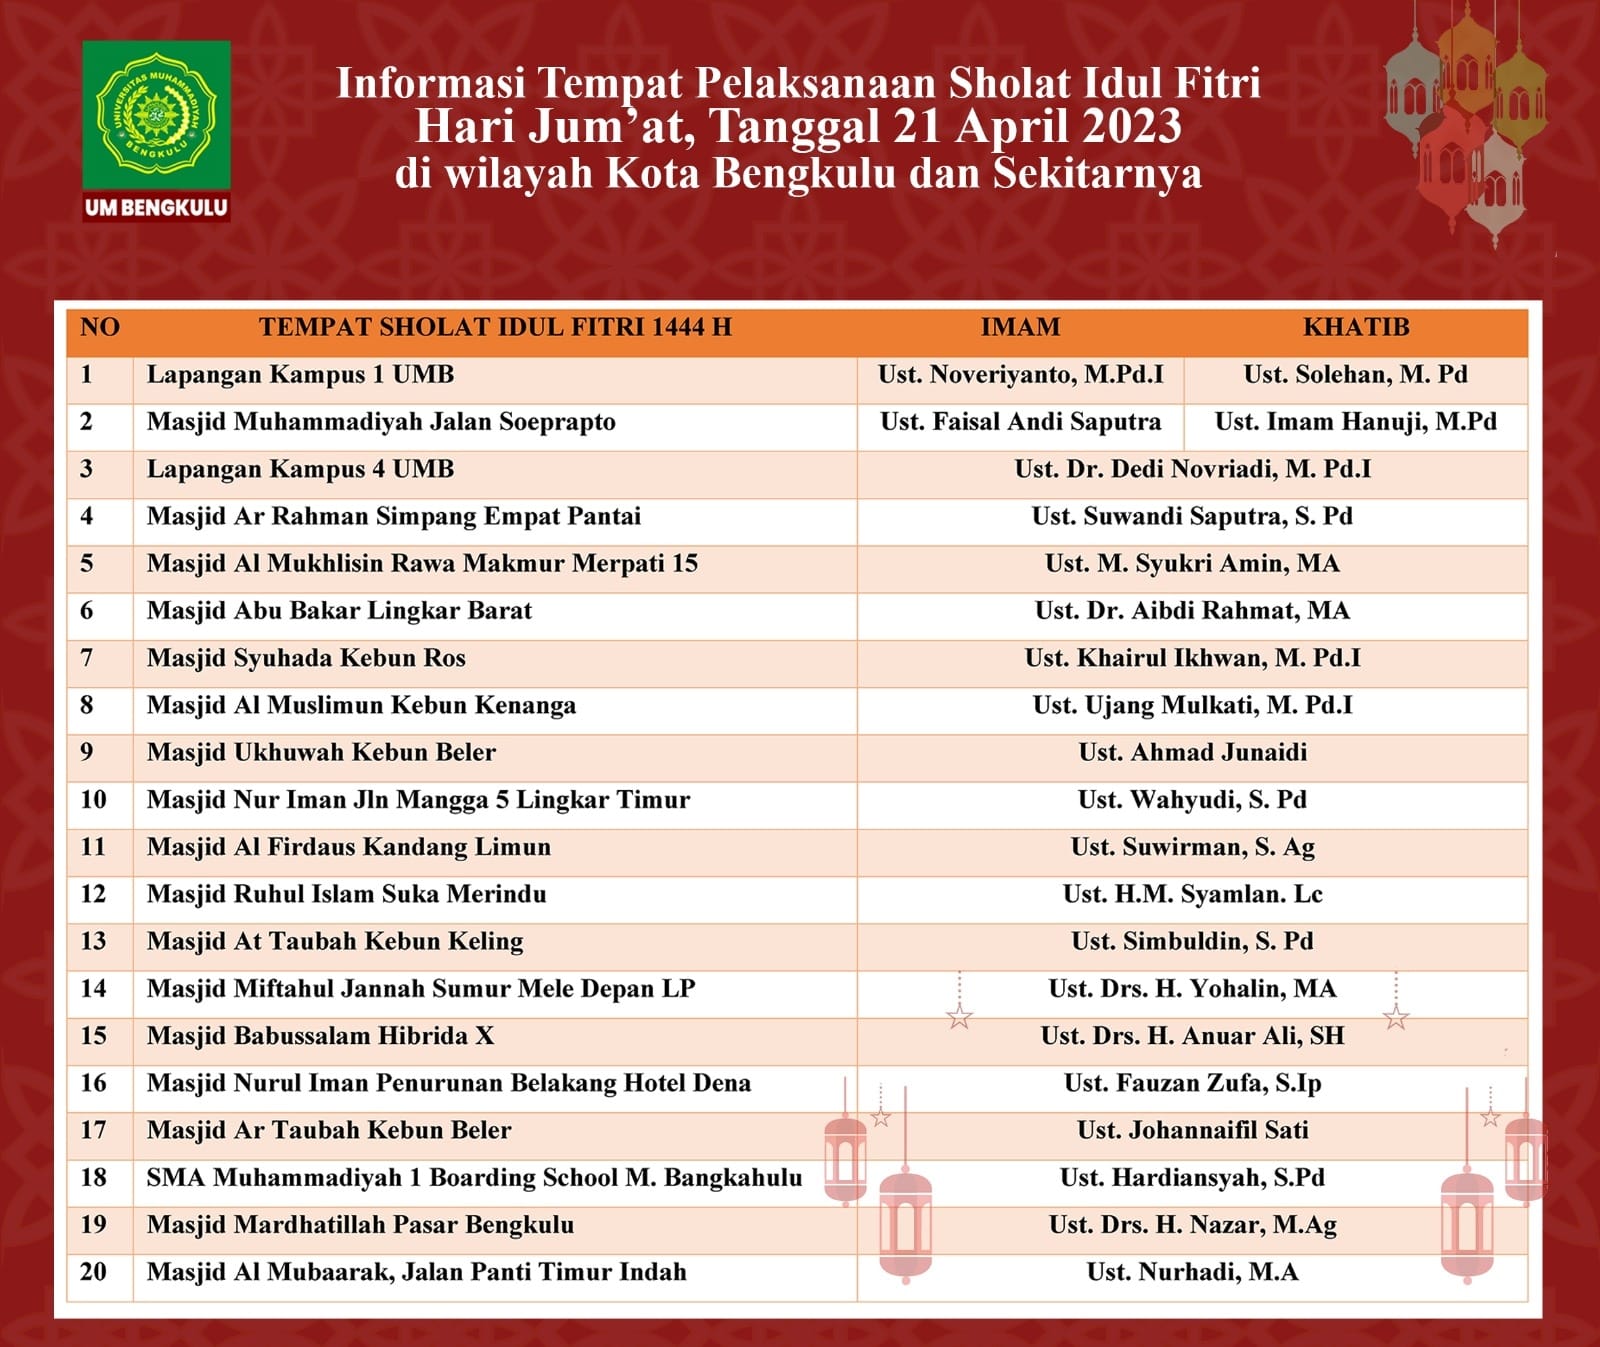 Warga Muhammadiyah Laksanakan Salat Idul Fitri 21 April, Ini Lokasi Salat Idul Fitri di Bengkulu 